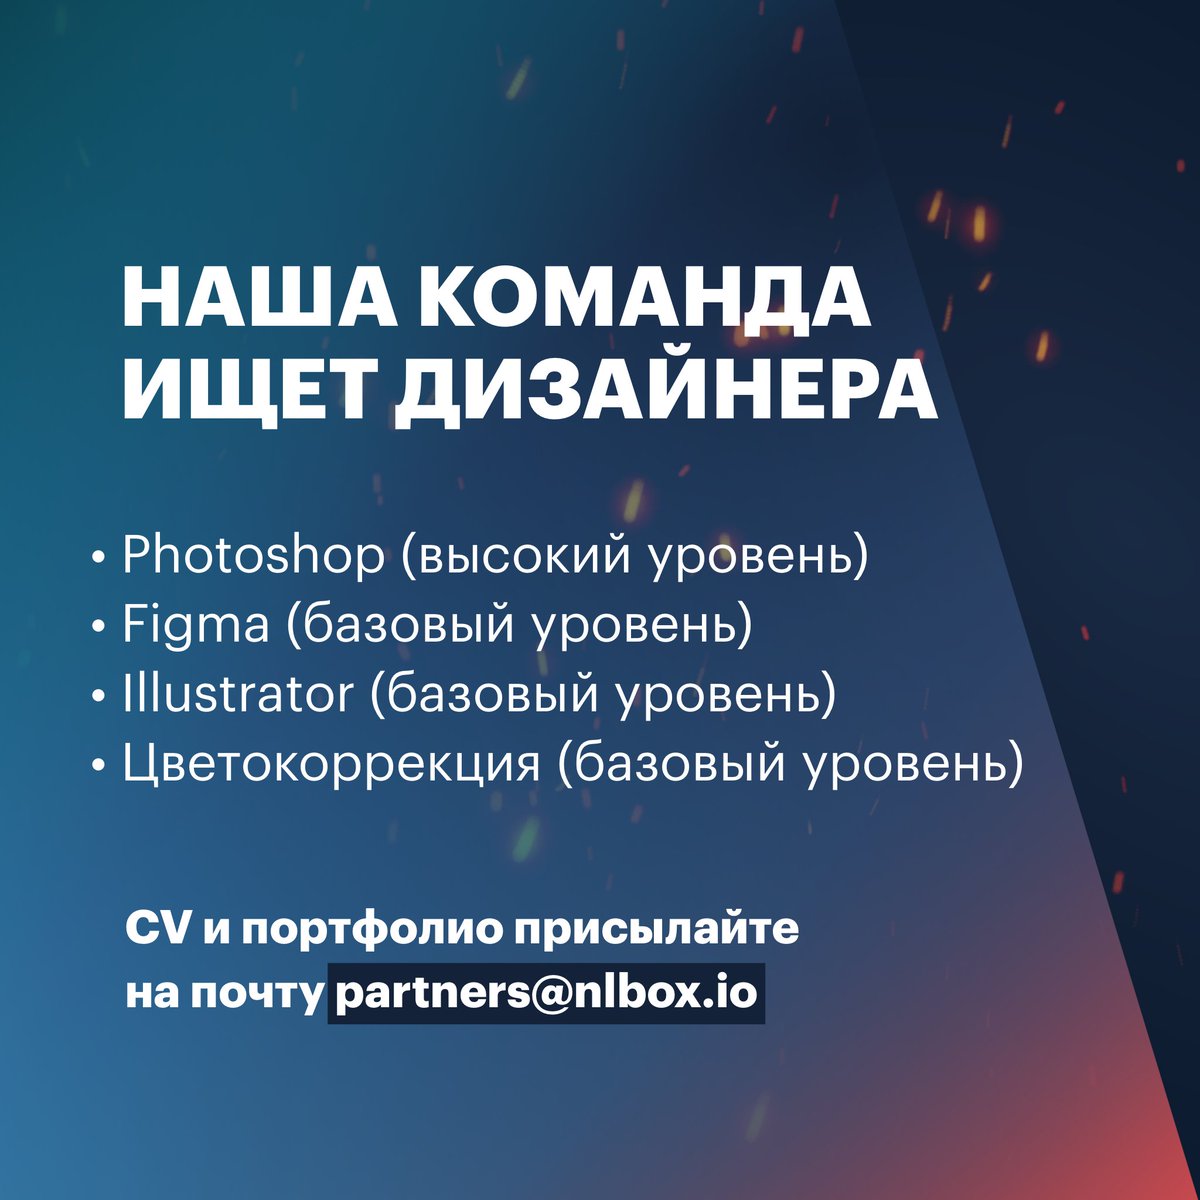 ❕Вакансия дизайнера на канал «Навальный LIVE» Ищем человека, который владеет Photoshop, Figma, Illustrator и навыками цветокоррекции, а также хочет работать в нашей команде. Работа удаленная, зарплата по результатам собеседования. Присылайте CV и портфолио на partners@nlbox.io